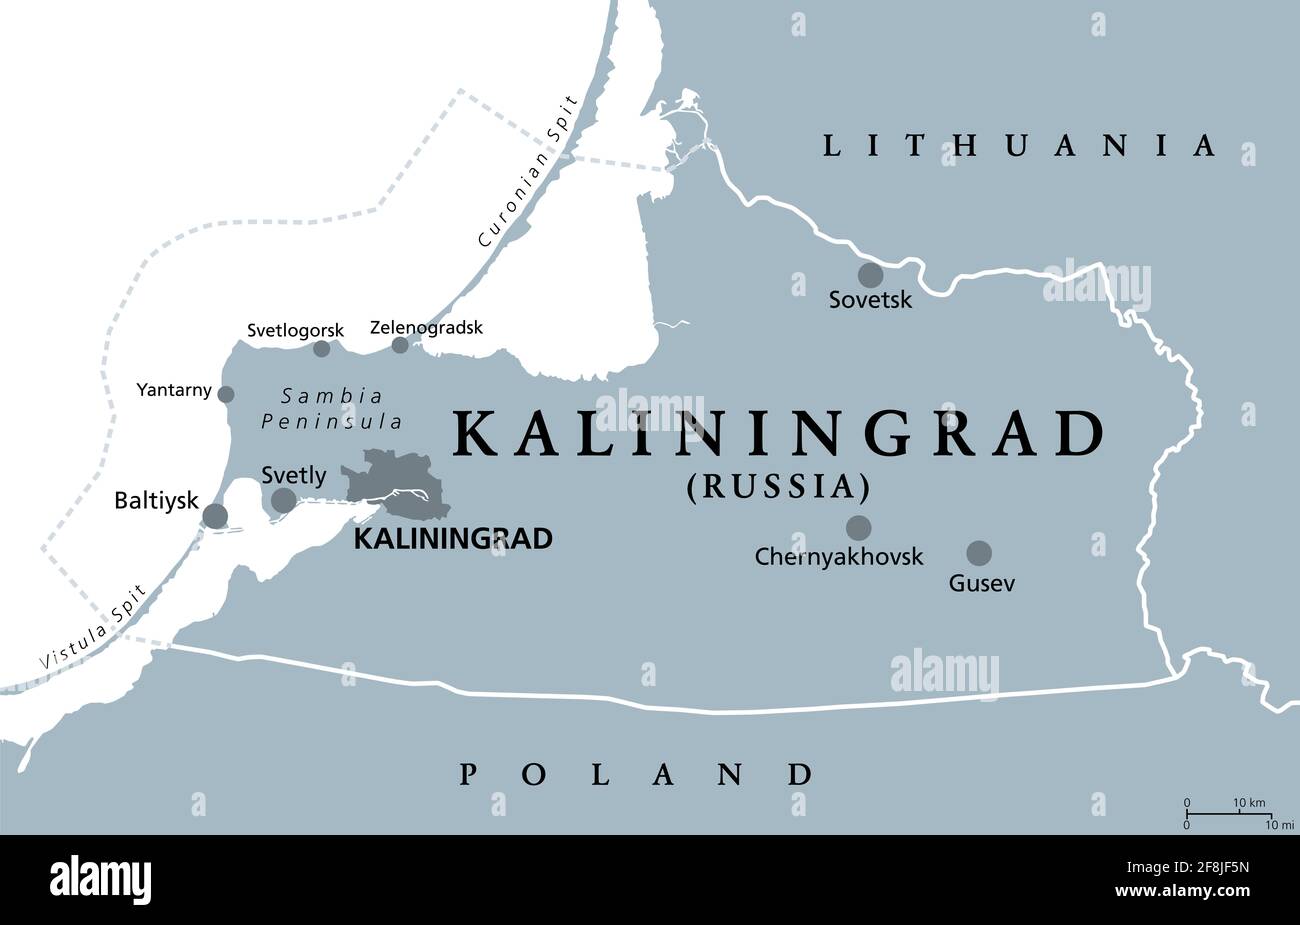 Région de Kaliningrad, carte politique grise. Oblast de Kaliningrad, sujet fédéral et semi-enclave de Russie, situé sur la côte de la mer Baltique. Banque D'Images